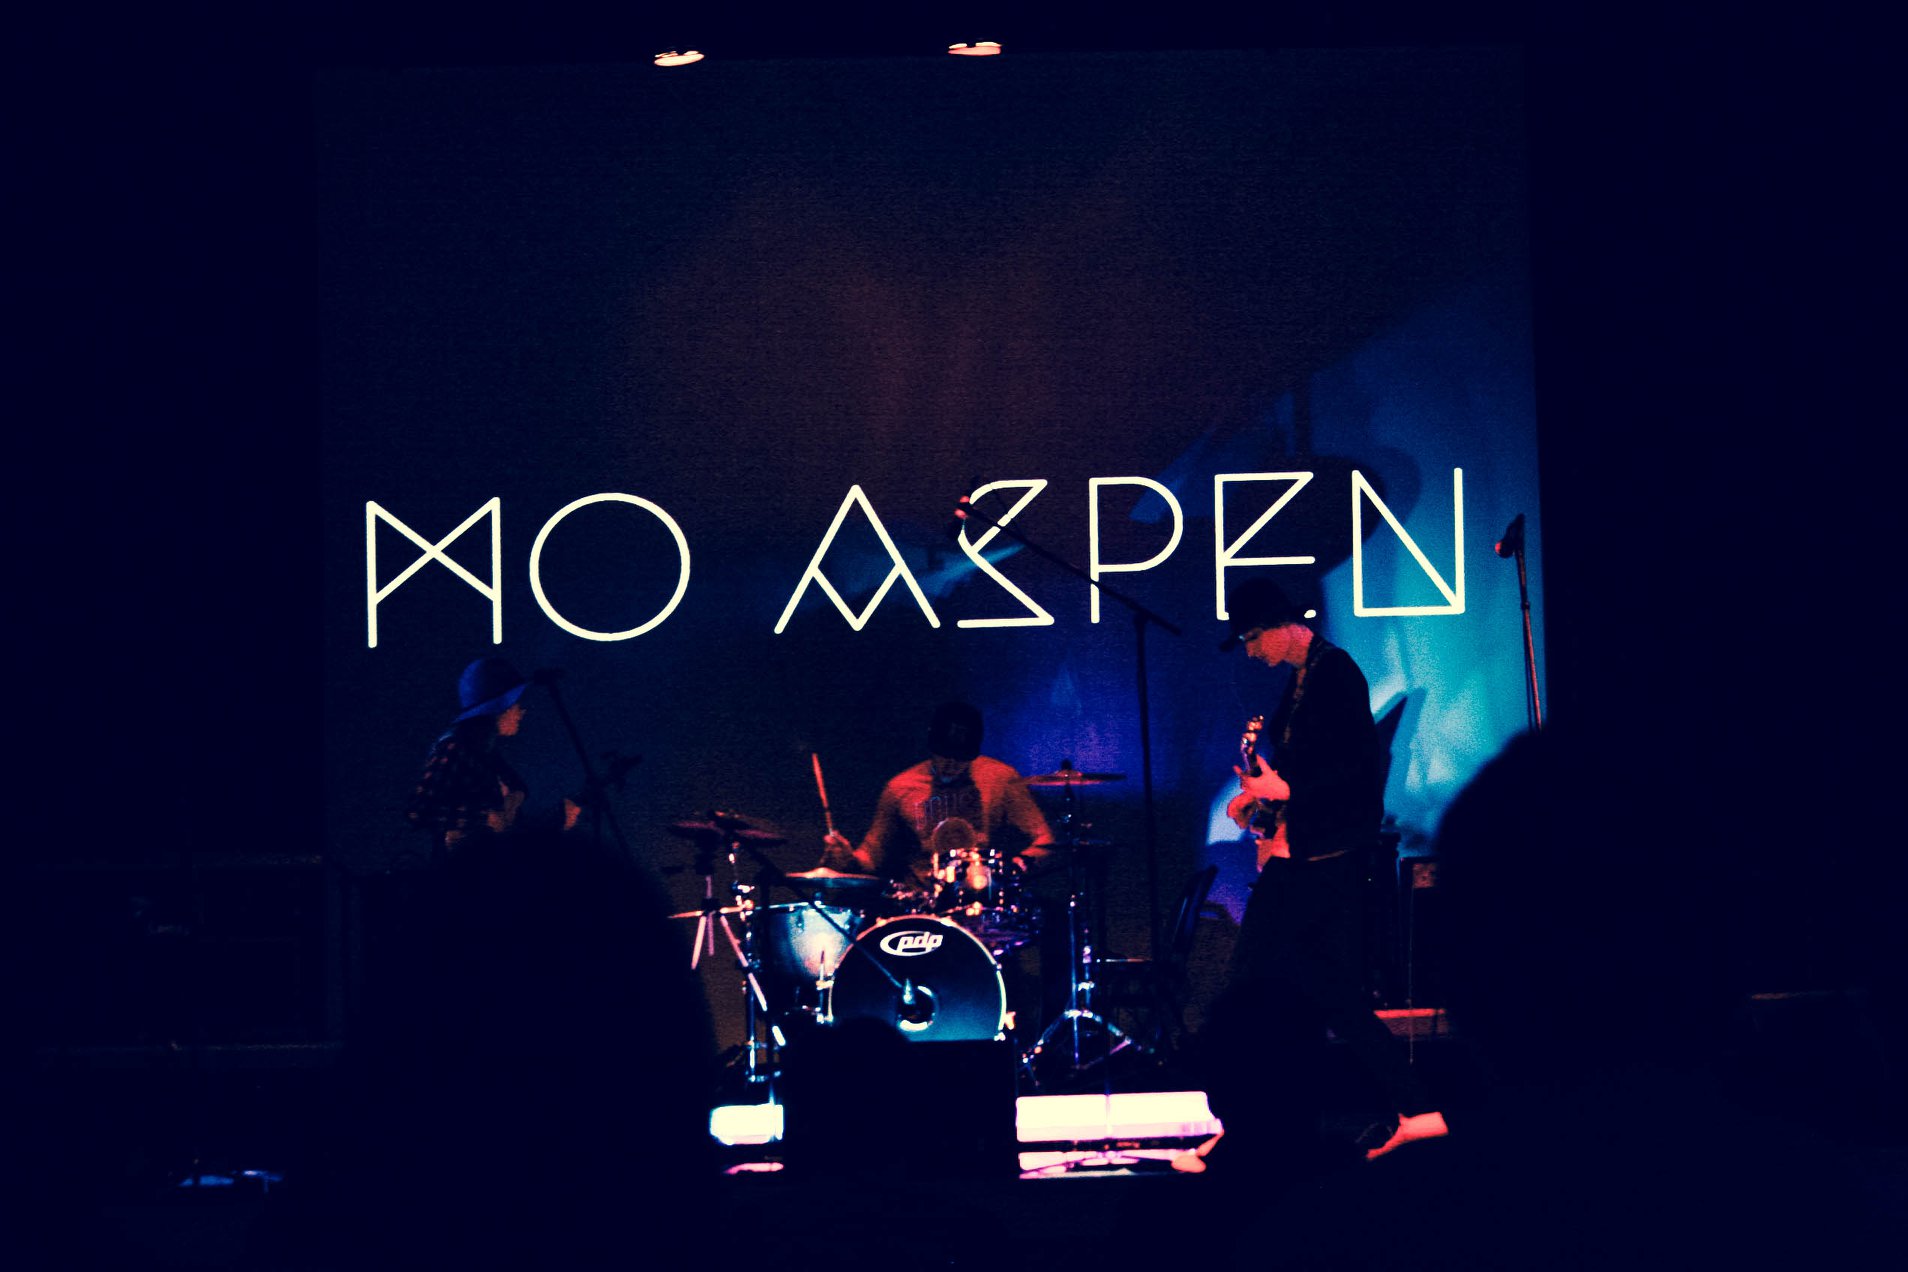 Mo Aspen Music Concert